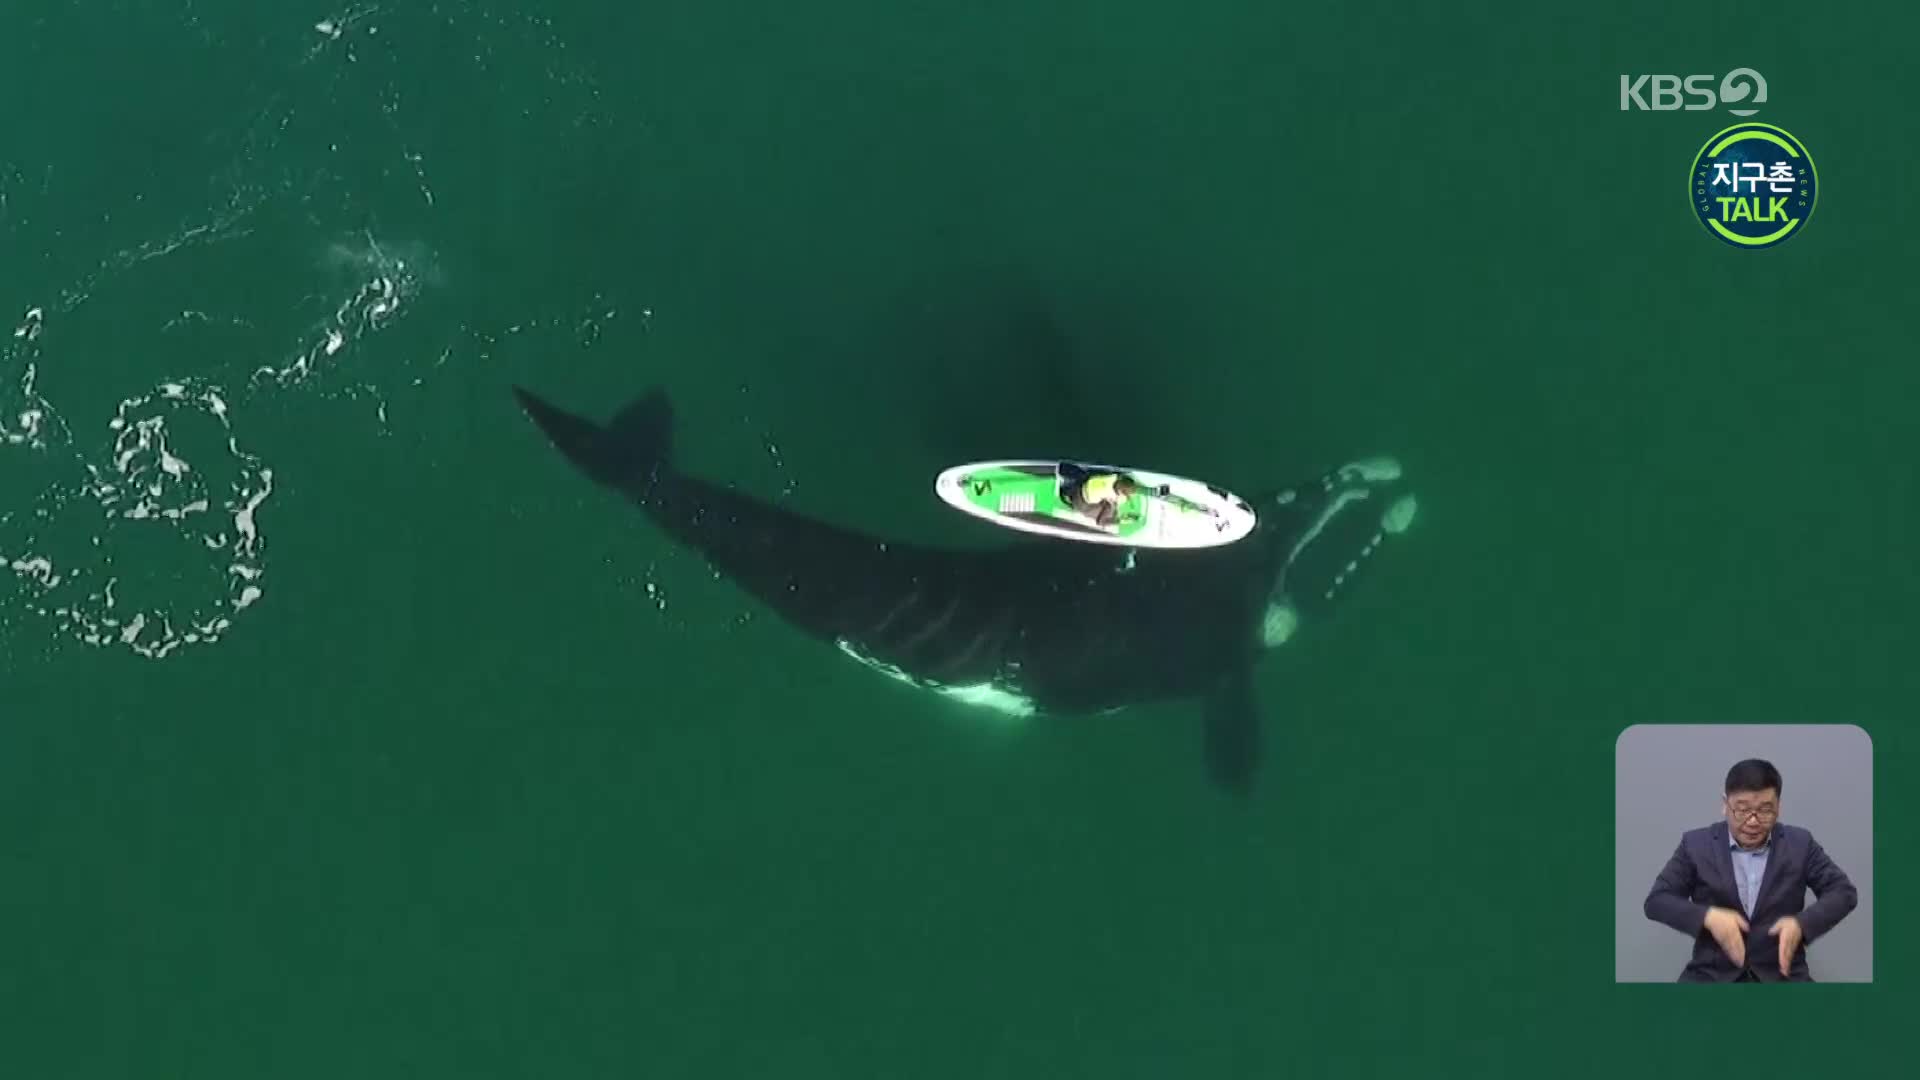 [지구촌 Talk] 아르헨 남부 해안, 패들보드 만난 고래의 반응은?